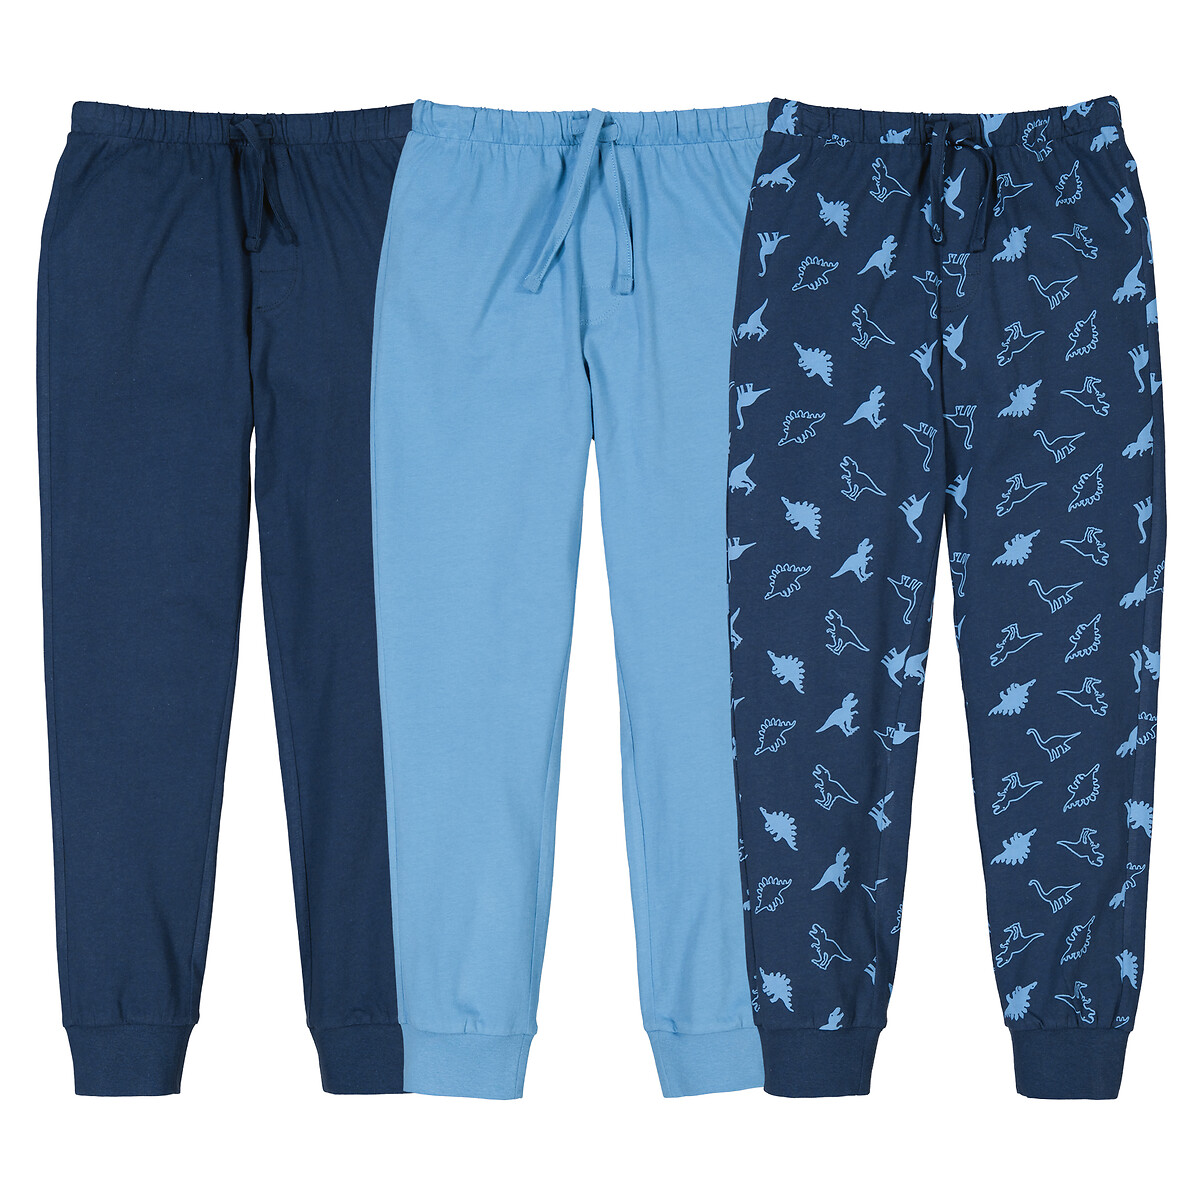 Комплект из трех пижамных брюк La Redoute 3 года - 94 см синий комплект из двух брюк пижамных из велюра 3 года 94 см синий